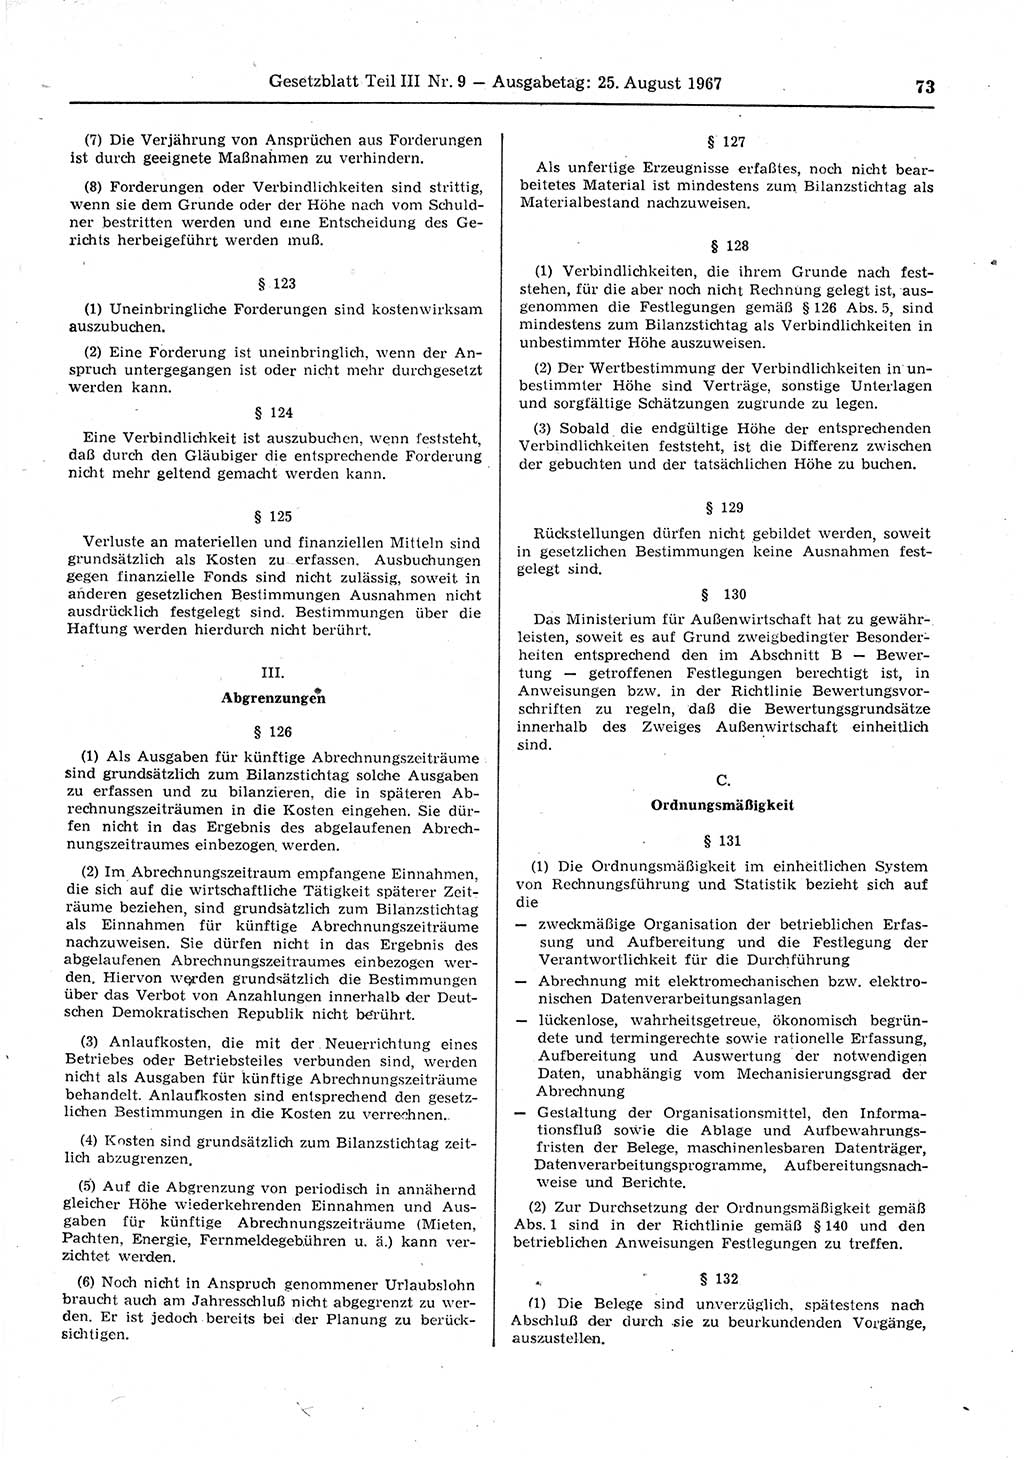 Gesetzblatt (GBl.) der Deutschen Demokratischen Republik (DDR) Teil ⅠⅠⅠ 1967, Seite 73 (GBl. DDR ⅠⅠⅠ 1967, S. 73)